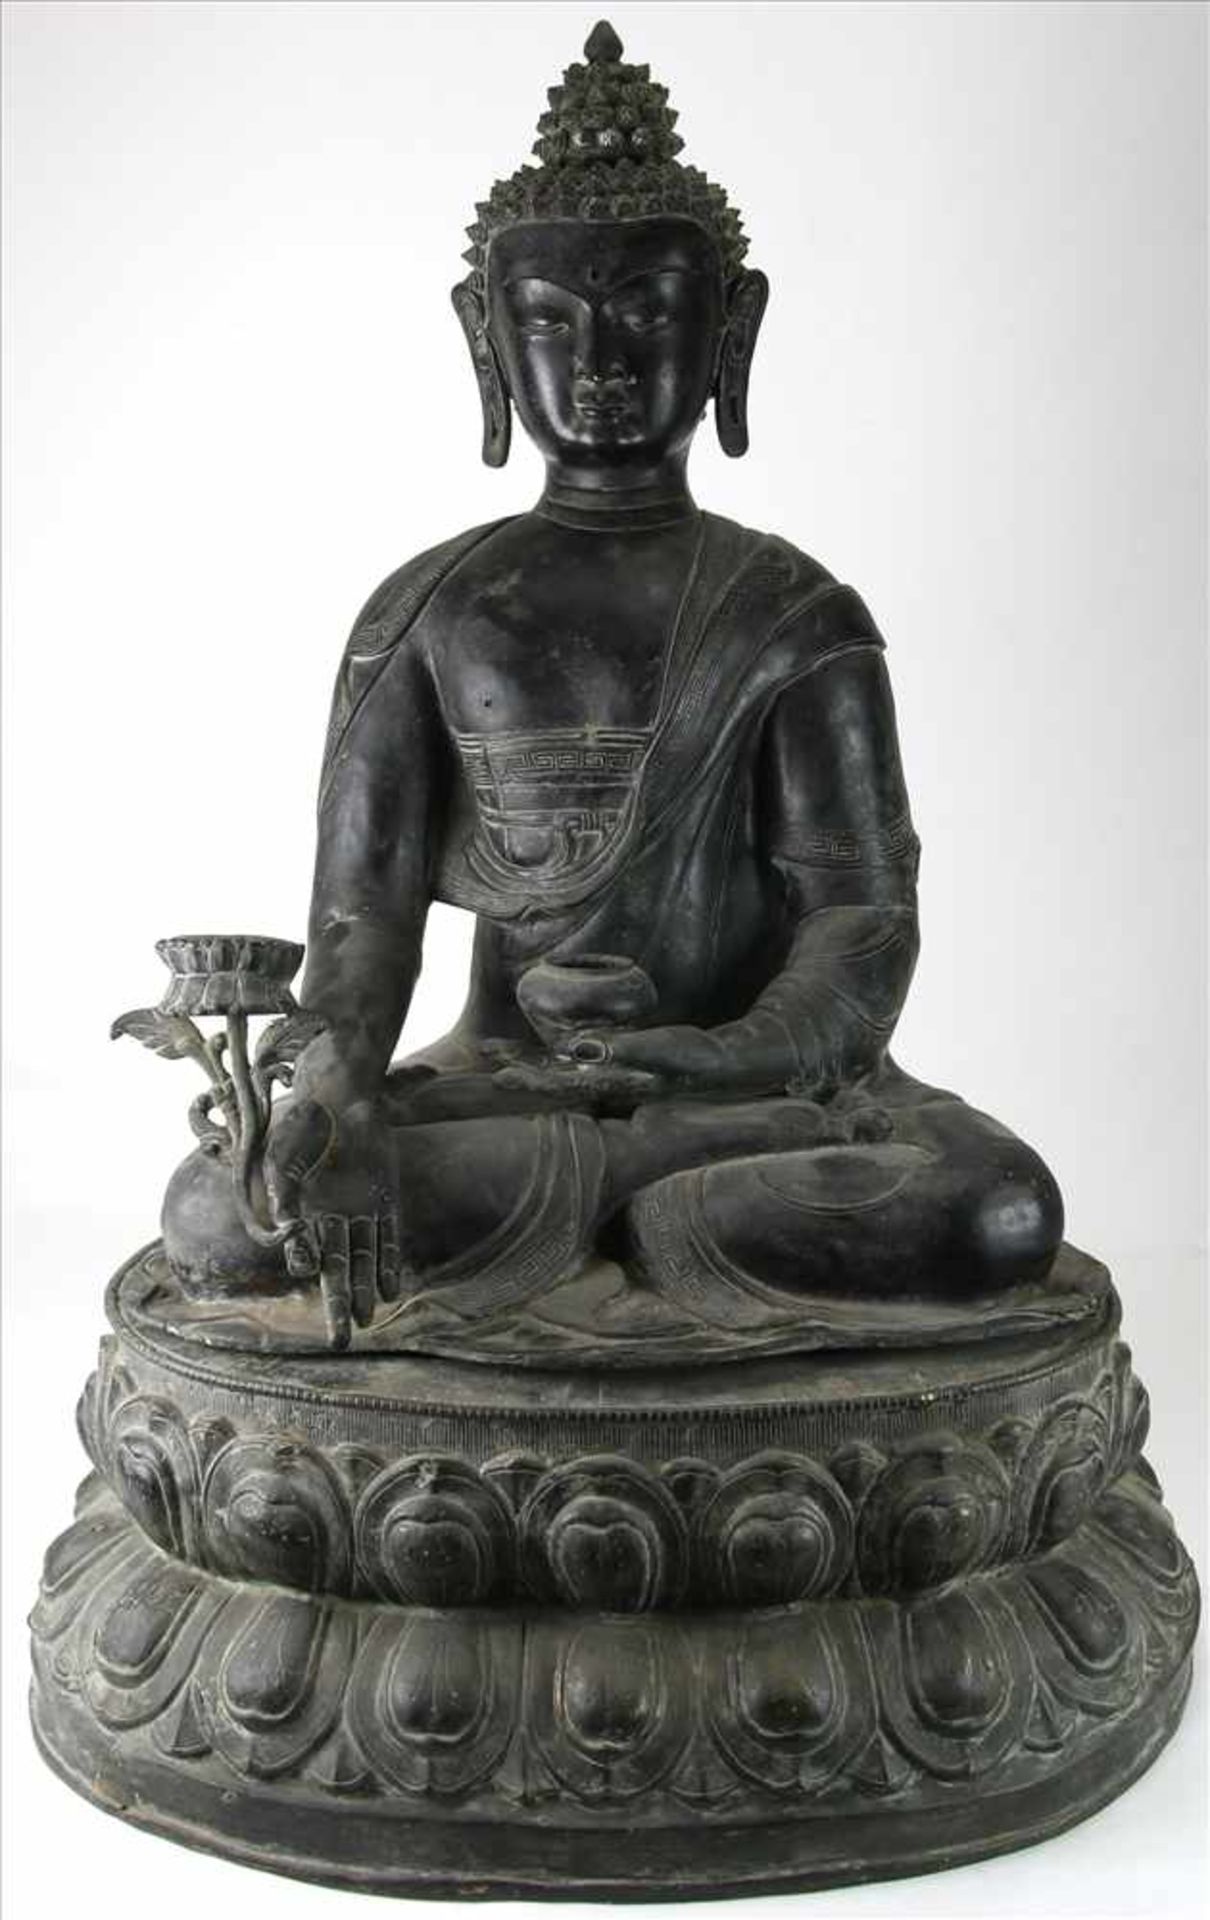 Sitzende Buddha-FigurIndien, 19./20. Jh. 2-teilige Buddha-Figur auf Lotusthron in der linken Hand